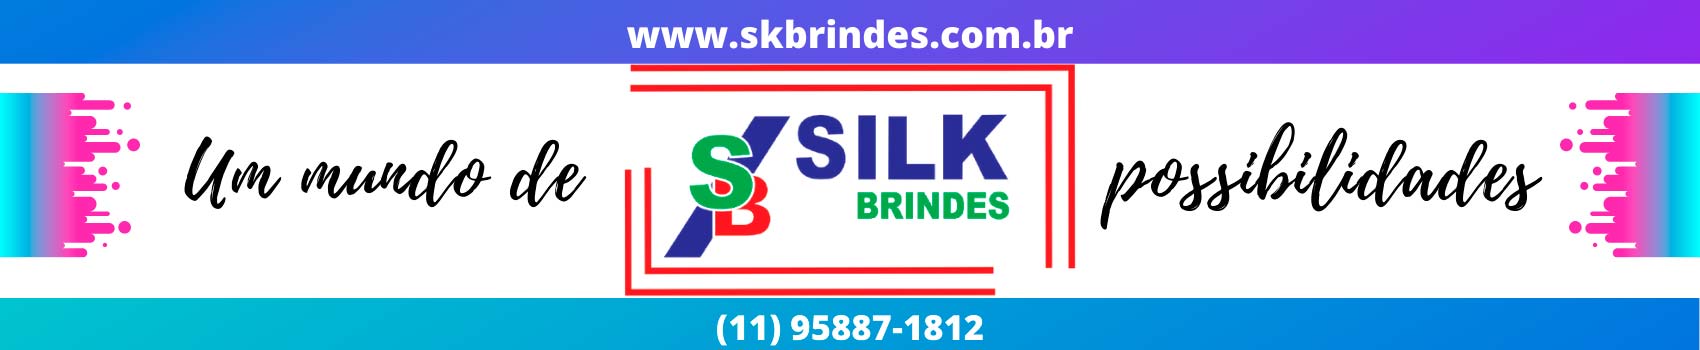 Silk Brindes